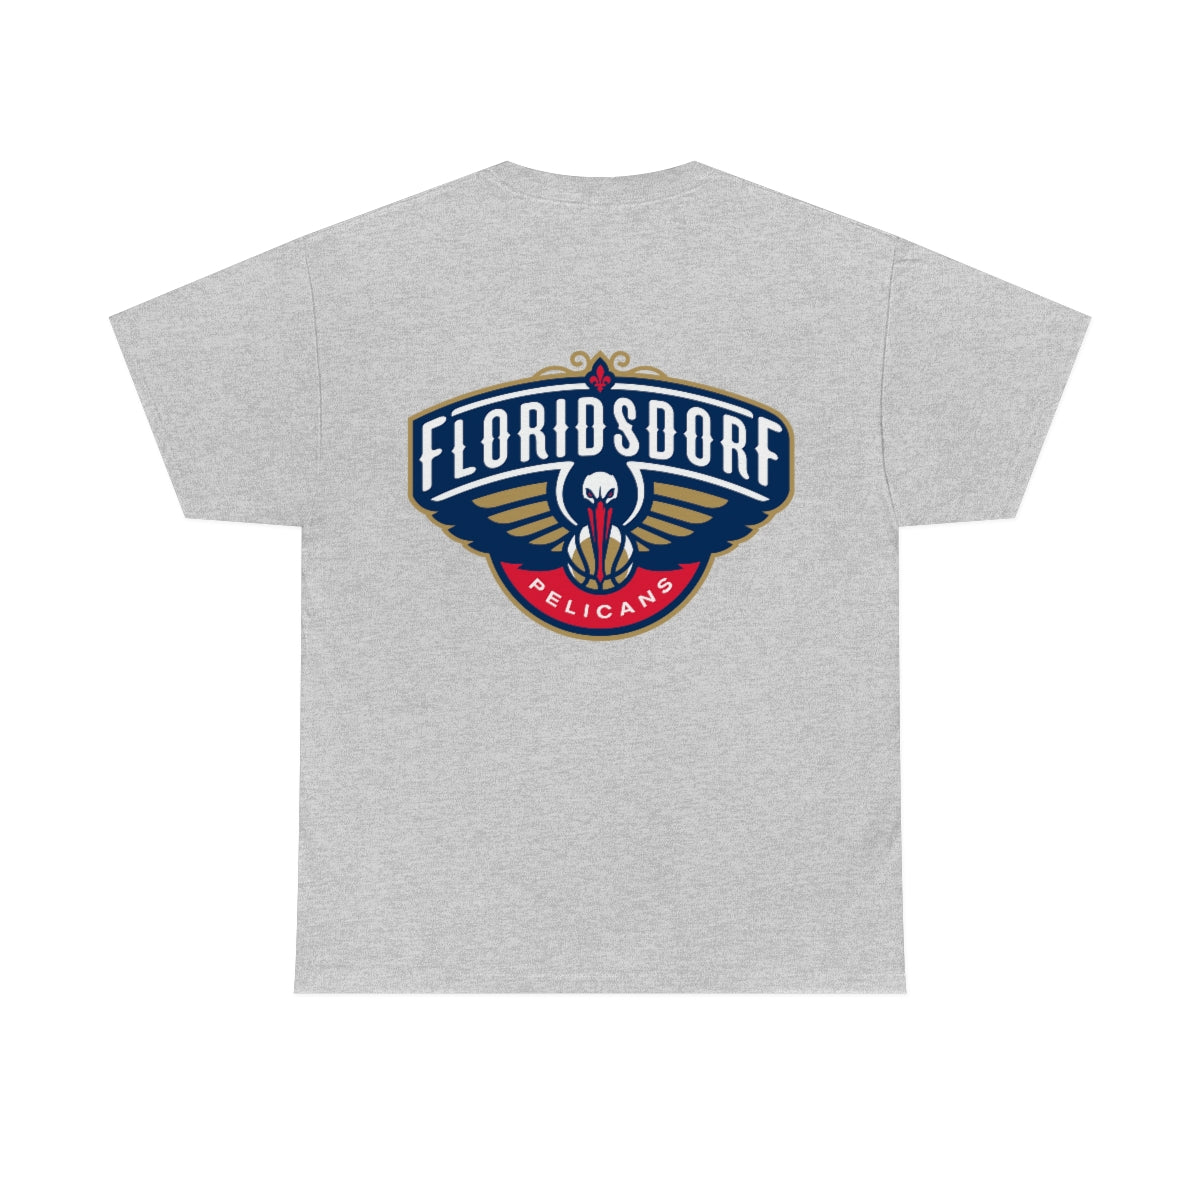 Hoodz T-shirt - 1210 Floridsdorf